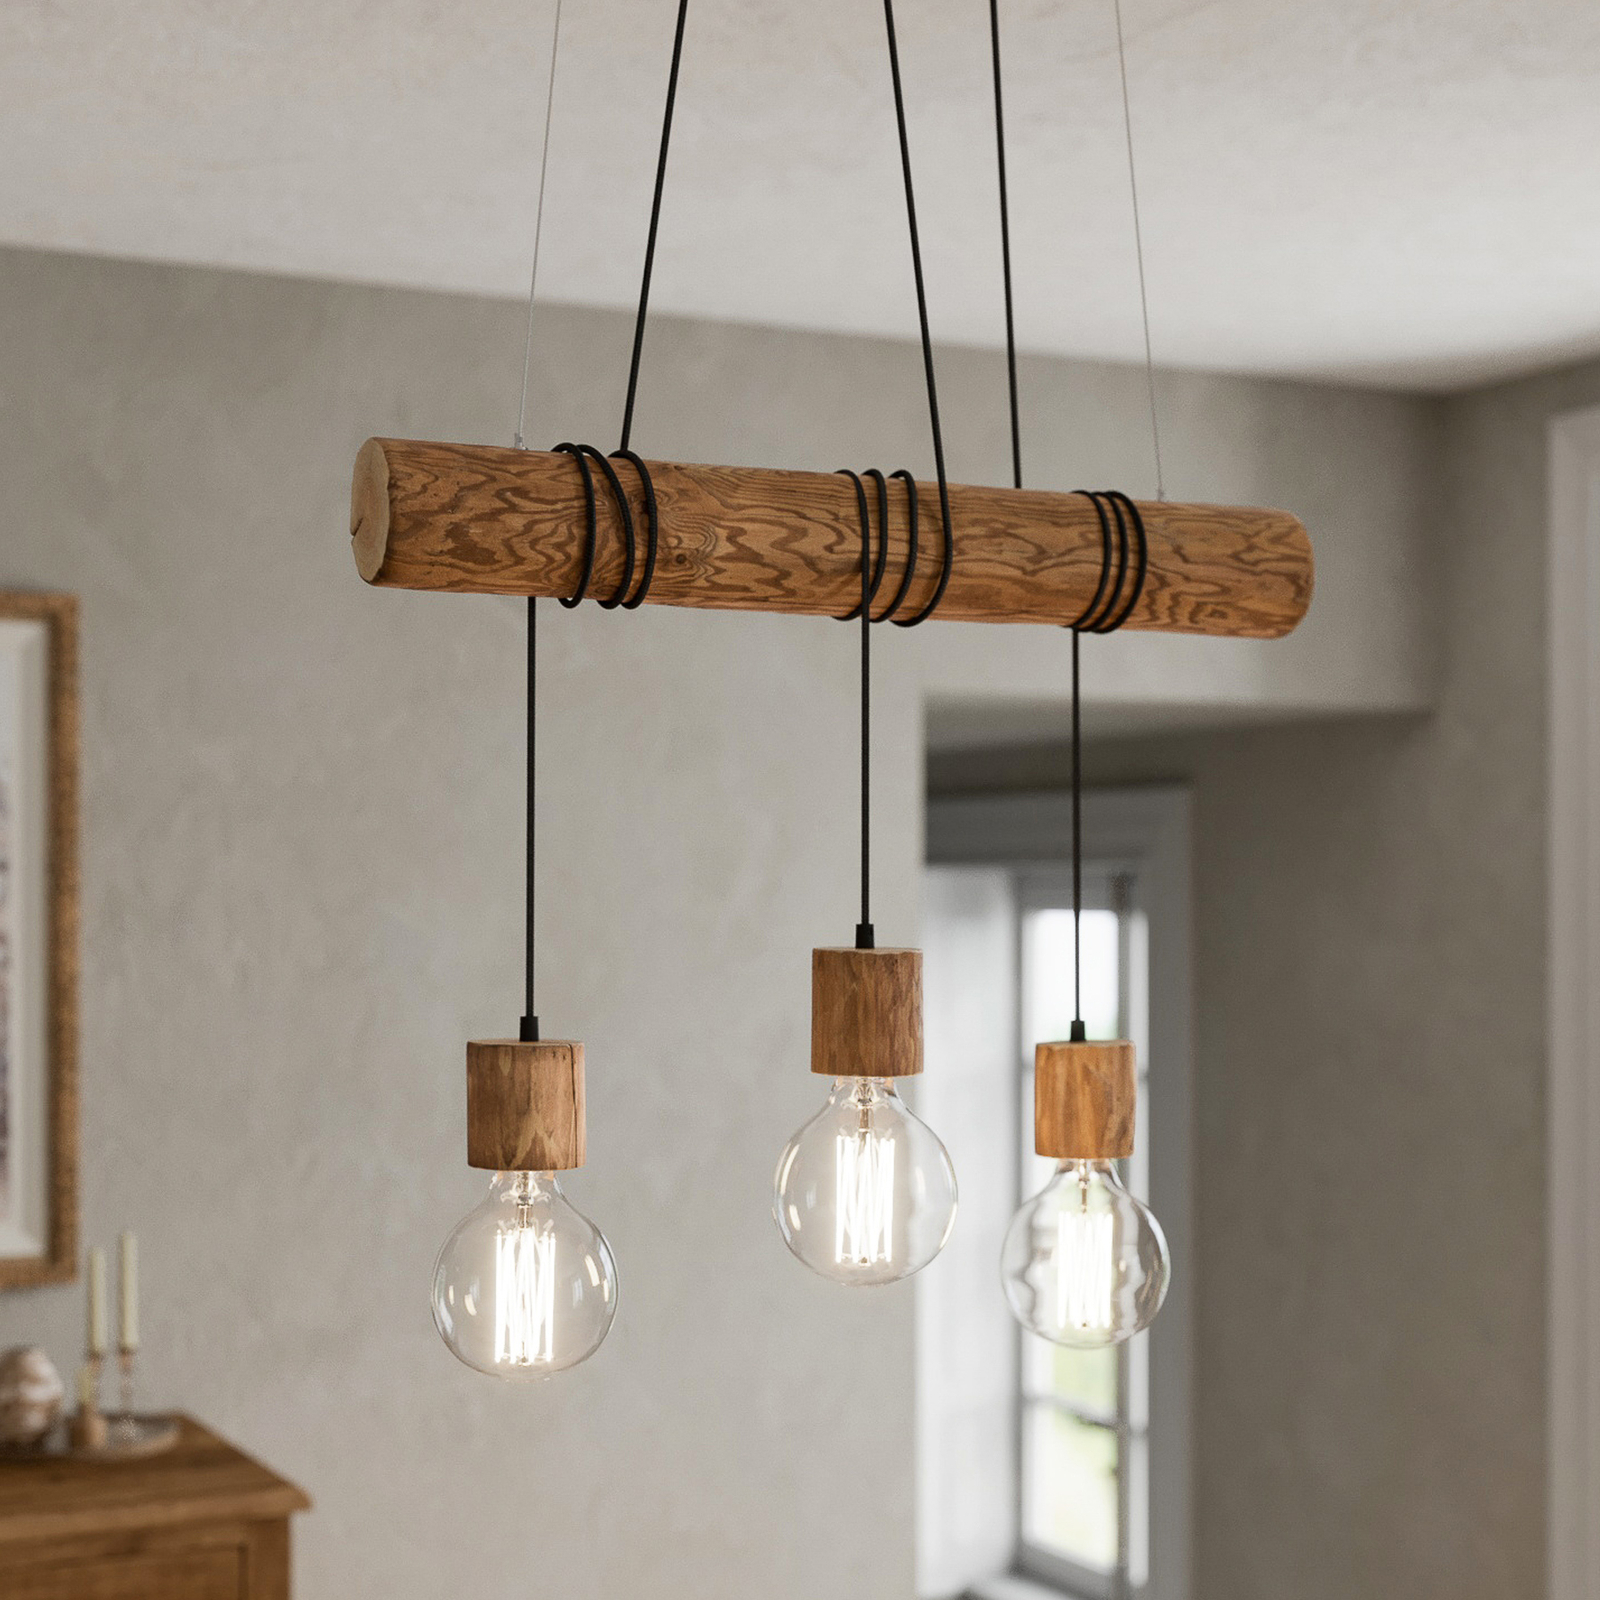 Envolight hanglamp houten licht 3-lamps | Lampen24.nl